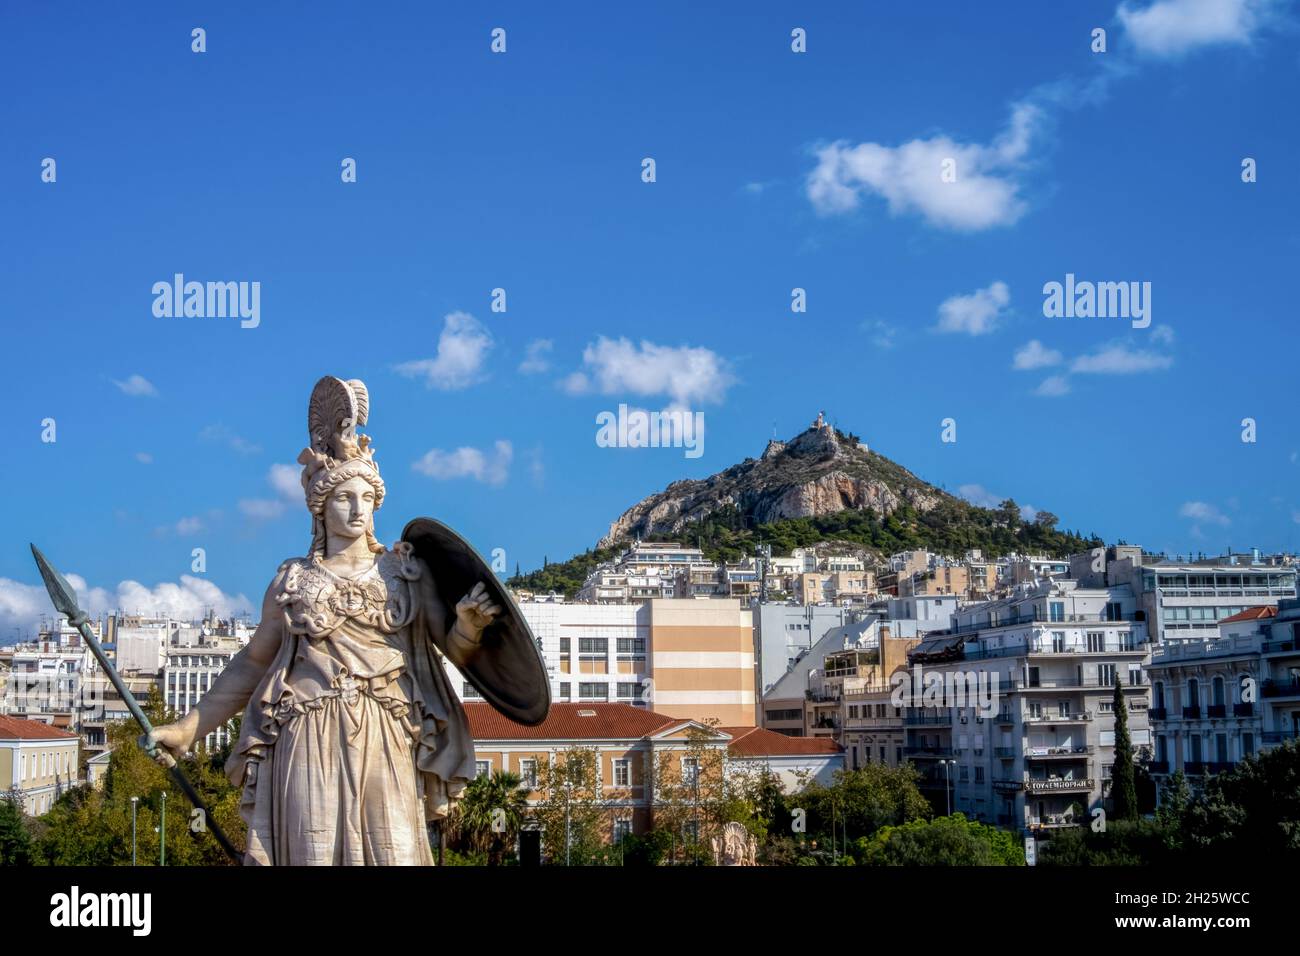 Athéna, déesse des Grecs anciens de l'effort héroïque et de la sagesse.La statue est située à l'entrée principale de l'Académie d'Athènes, Grèce. Banque D'Images